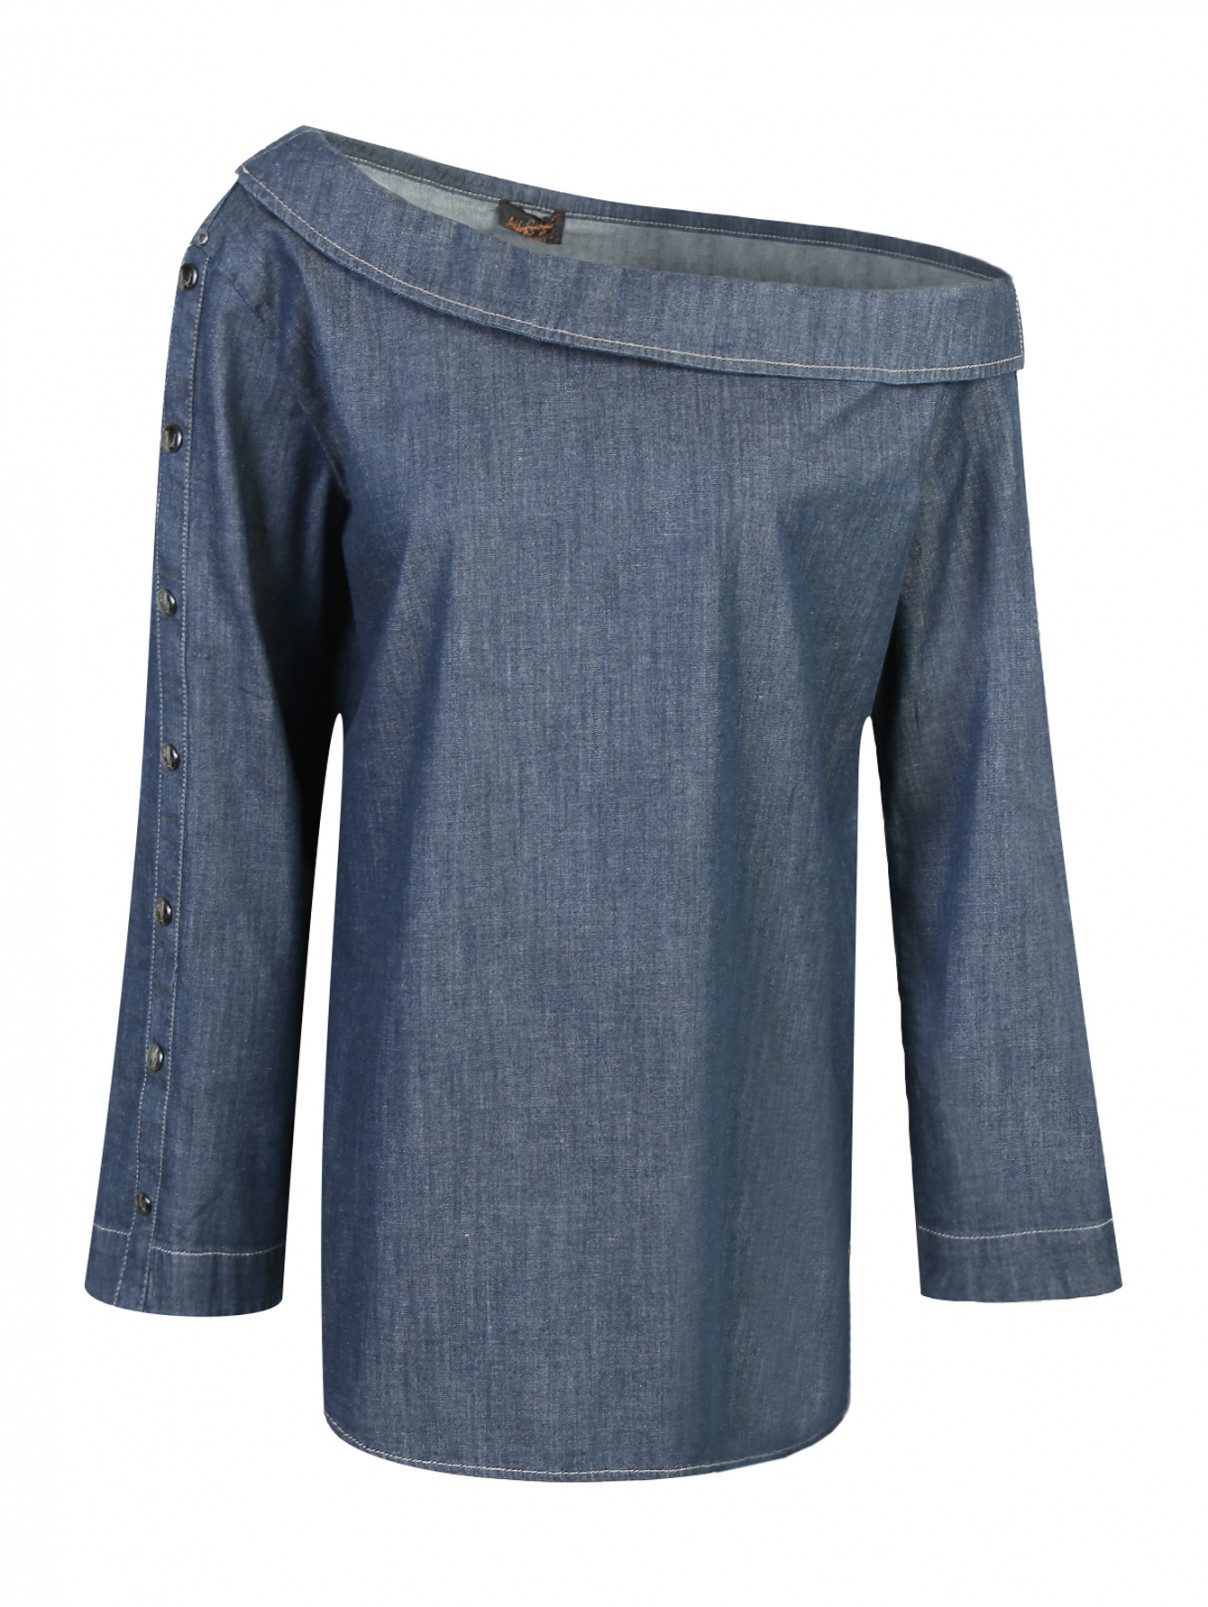 Джинсовая блузка свободного кроя Marina Rinaldi  –  Общий вид  – Цвет:  Синий